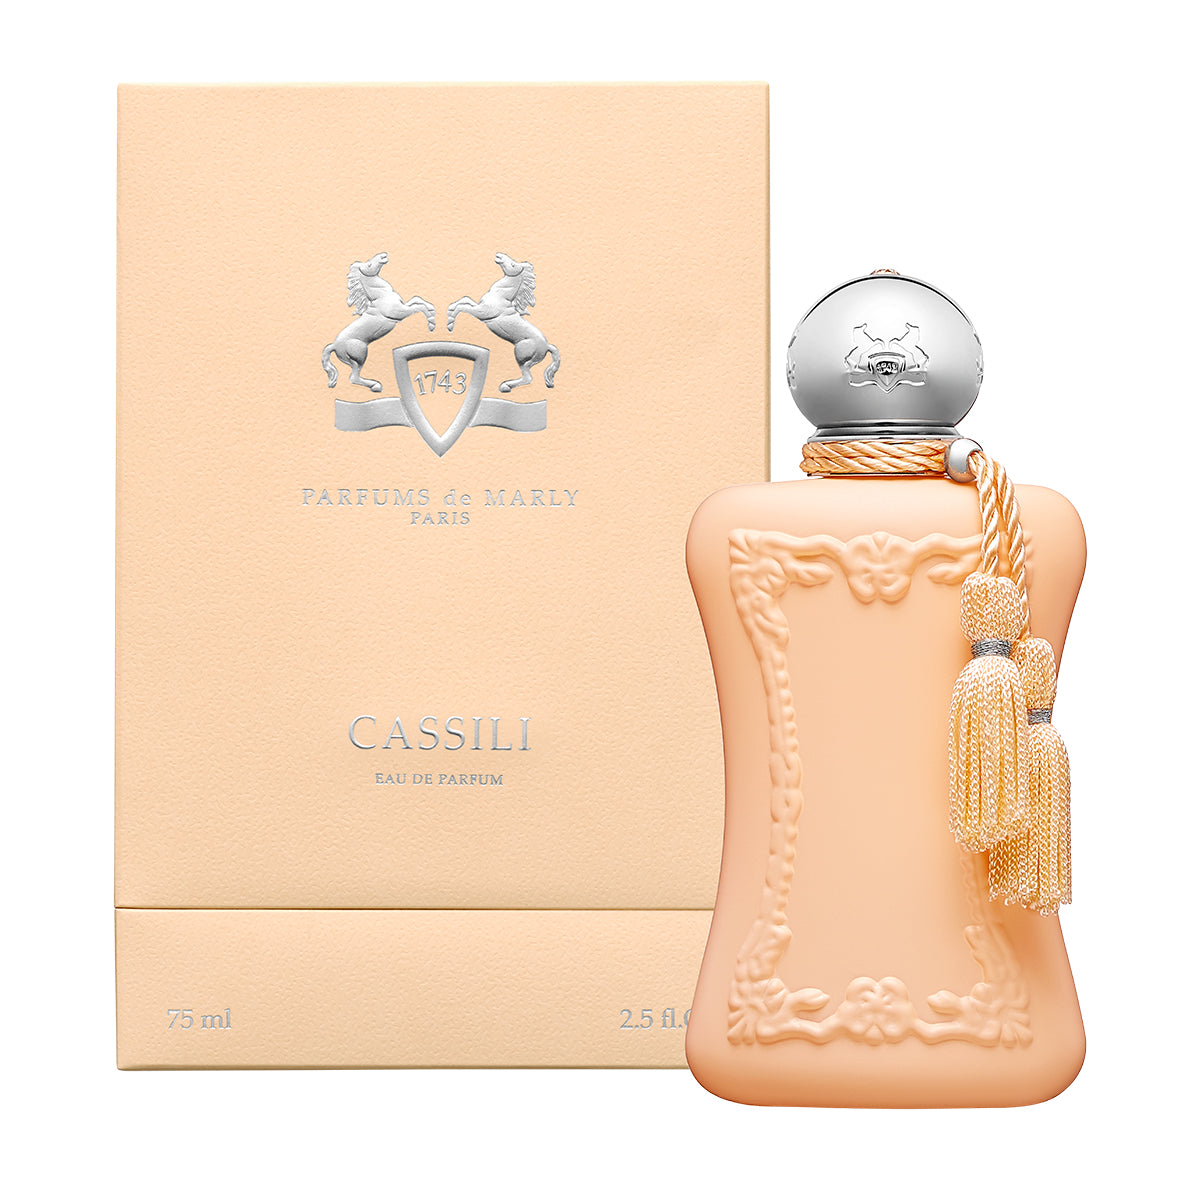 Cassilli - Parfums De Marly - EDP 75ml